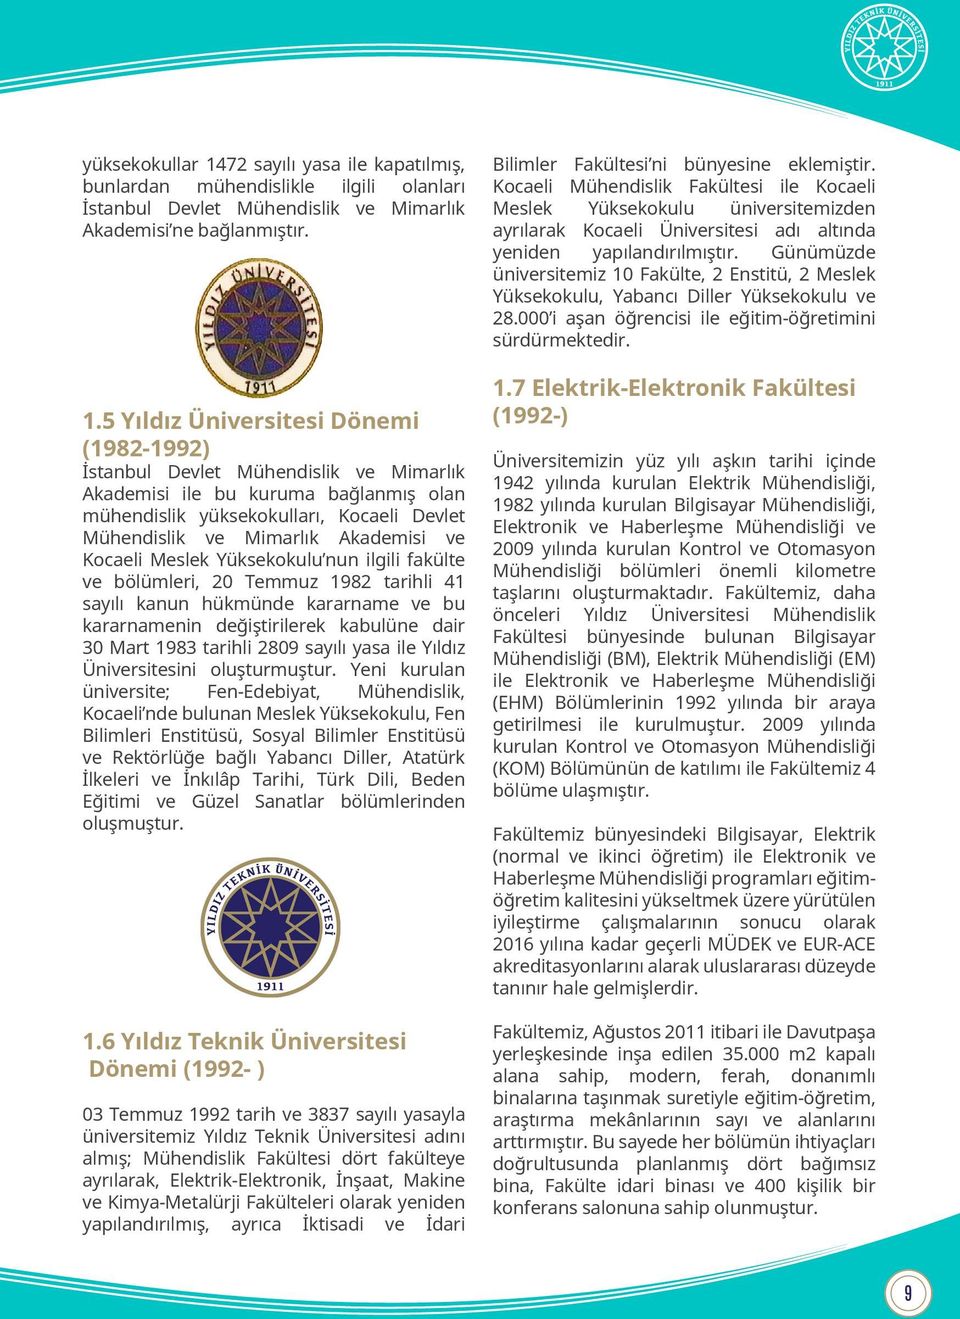 5 Yıldız Üniversitesi Dönemi (1982-1992) İstanbul Devlet Mühendislik ve Mimarlık Akademisi ile bu kuruma bağlanmış olan mühendislik yüksekokulları, Kocaeli Devlet Mühendislik ve Mimarlık Akademisi ve